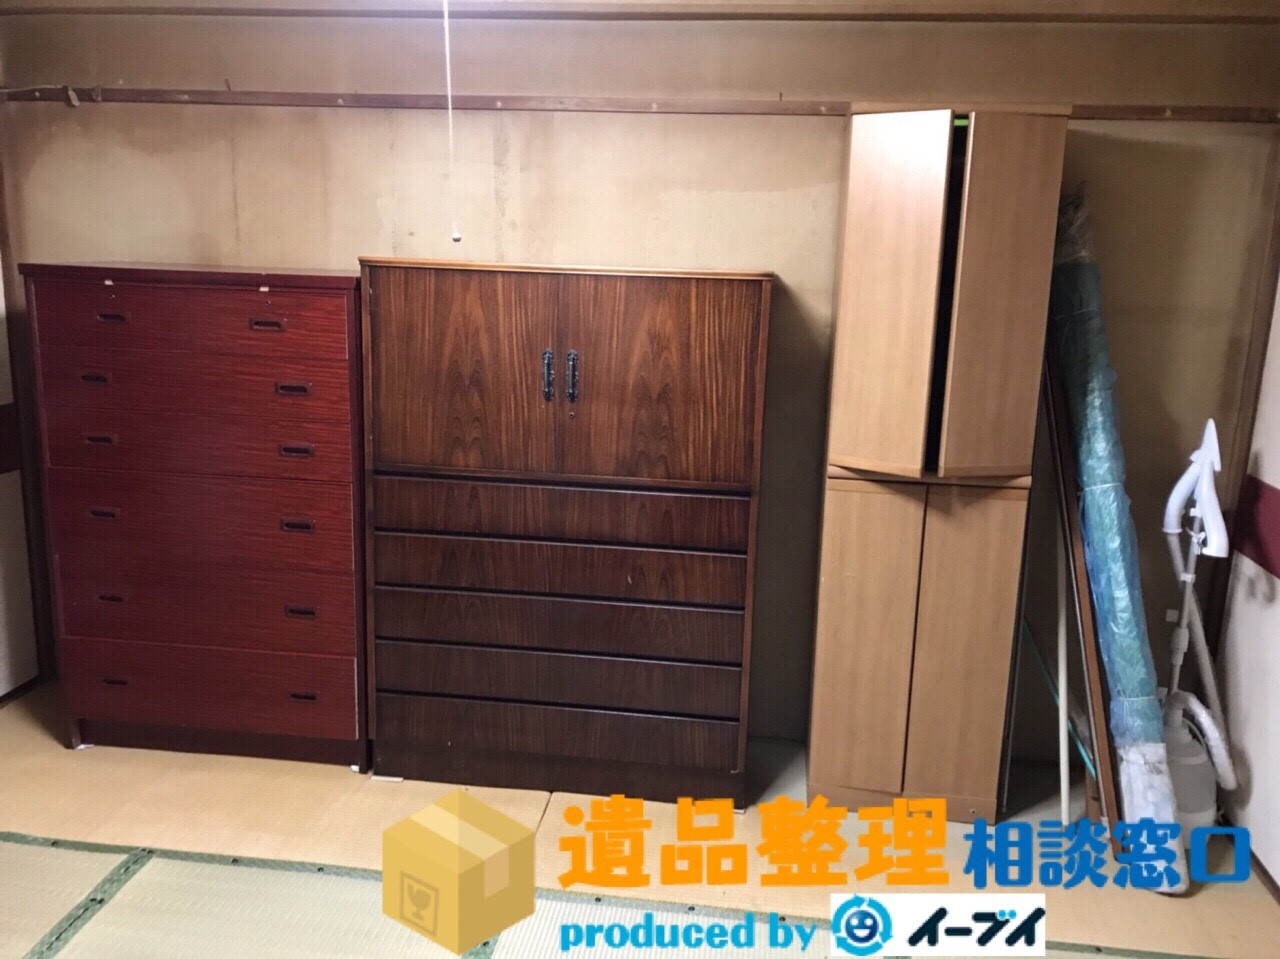 奈良県生駒市で遺品整理の作業で押し入れの中身や家具処分をしました。のアイキャッチ